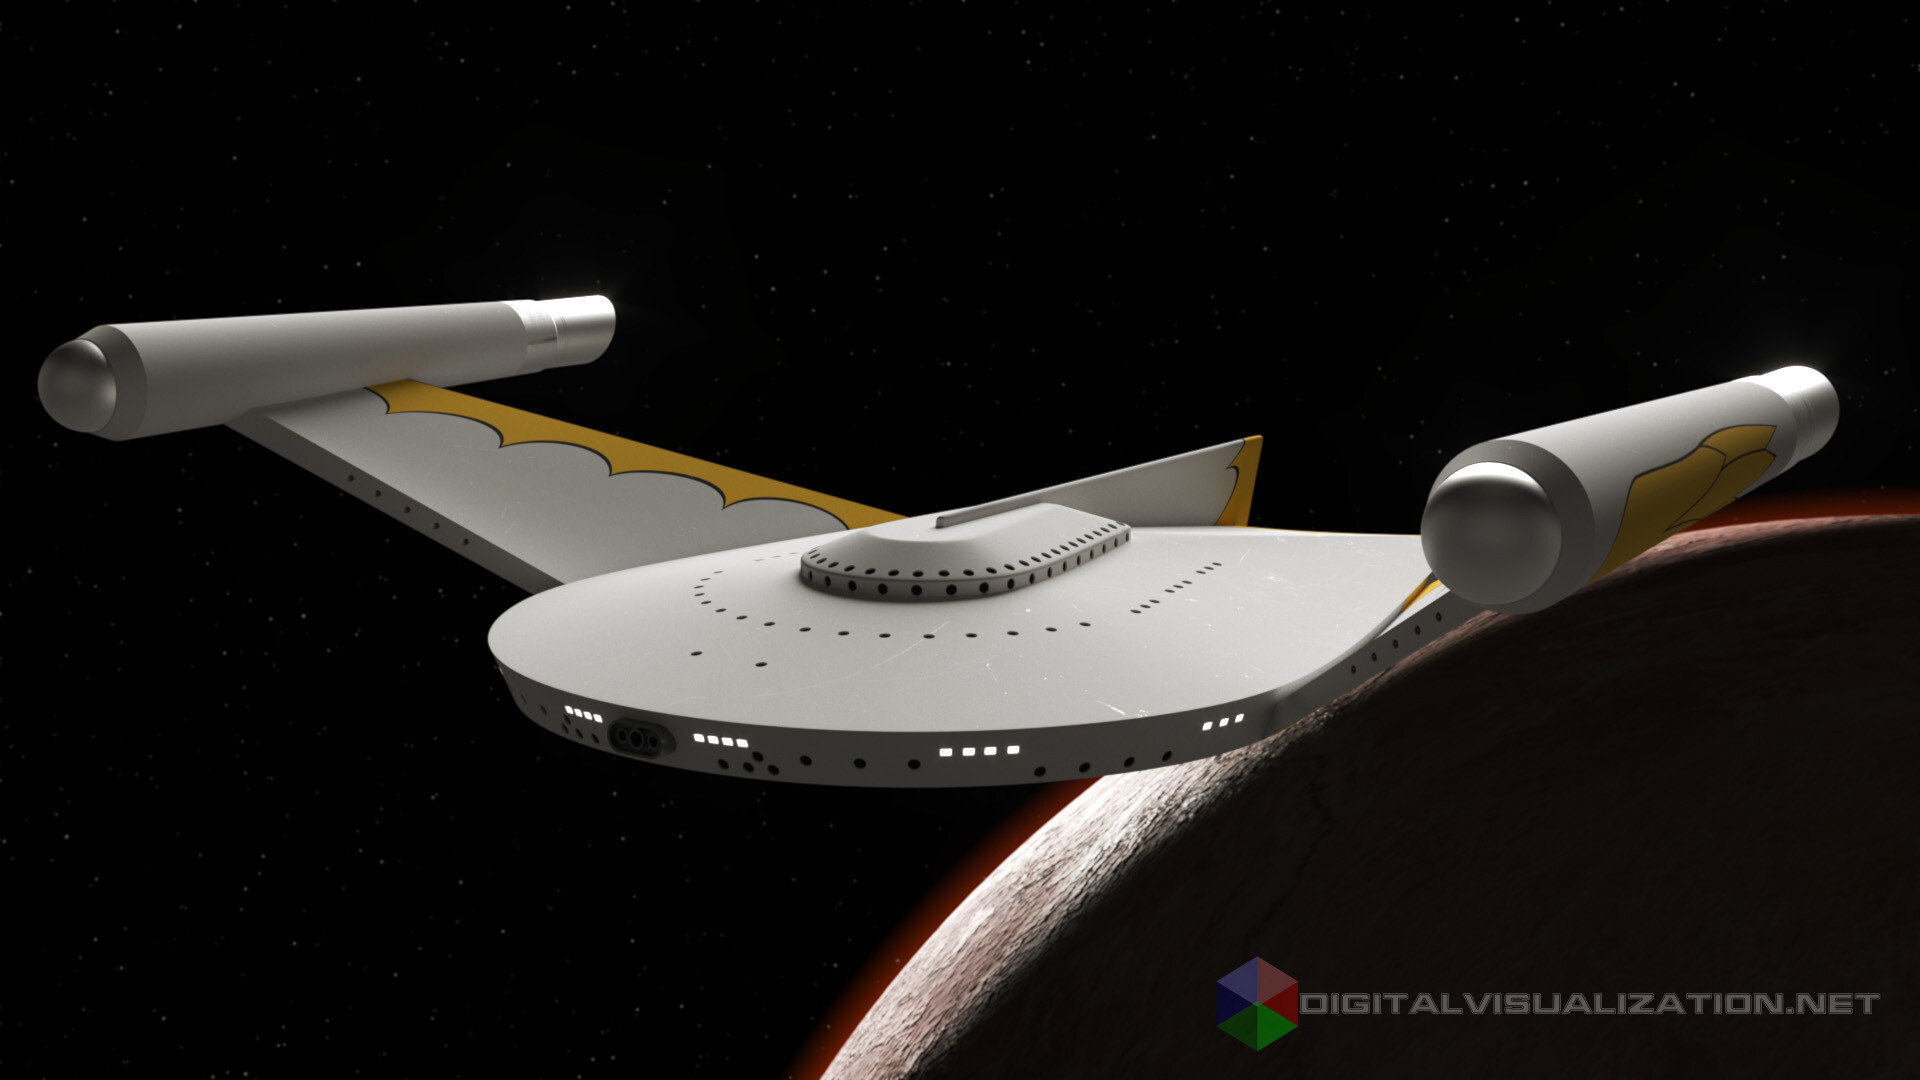 romulan star trek ship